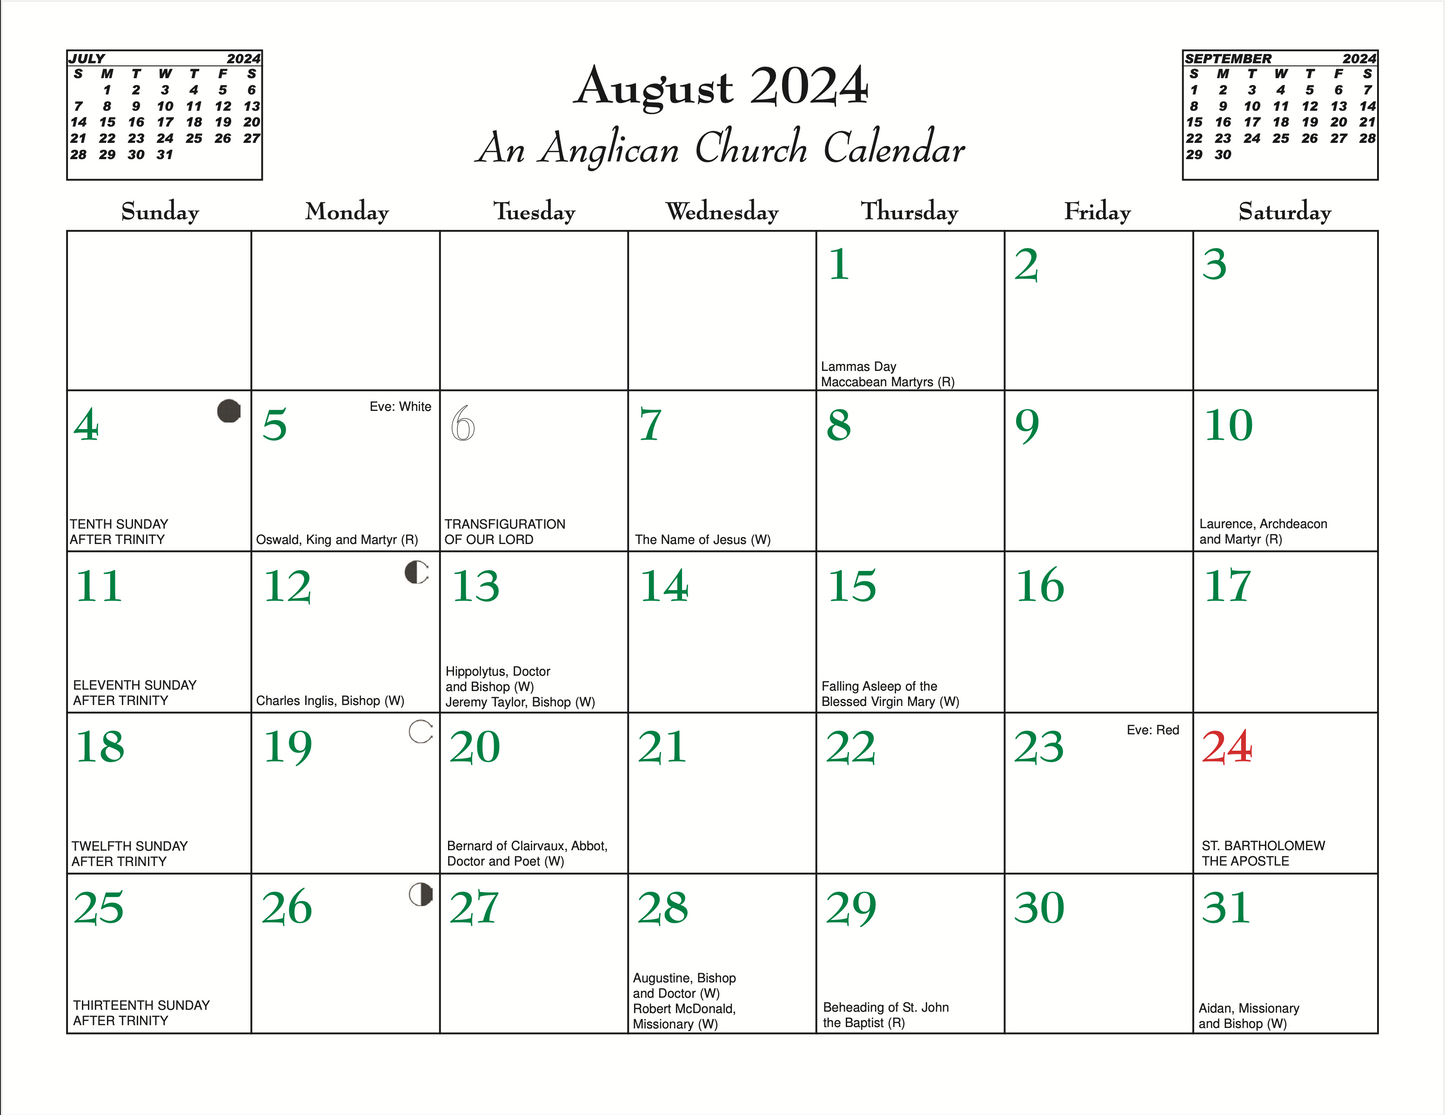 An Anglican Church Calendar 2024 St. Peter Publications